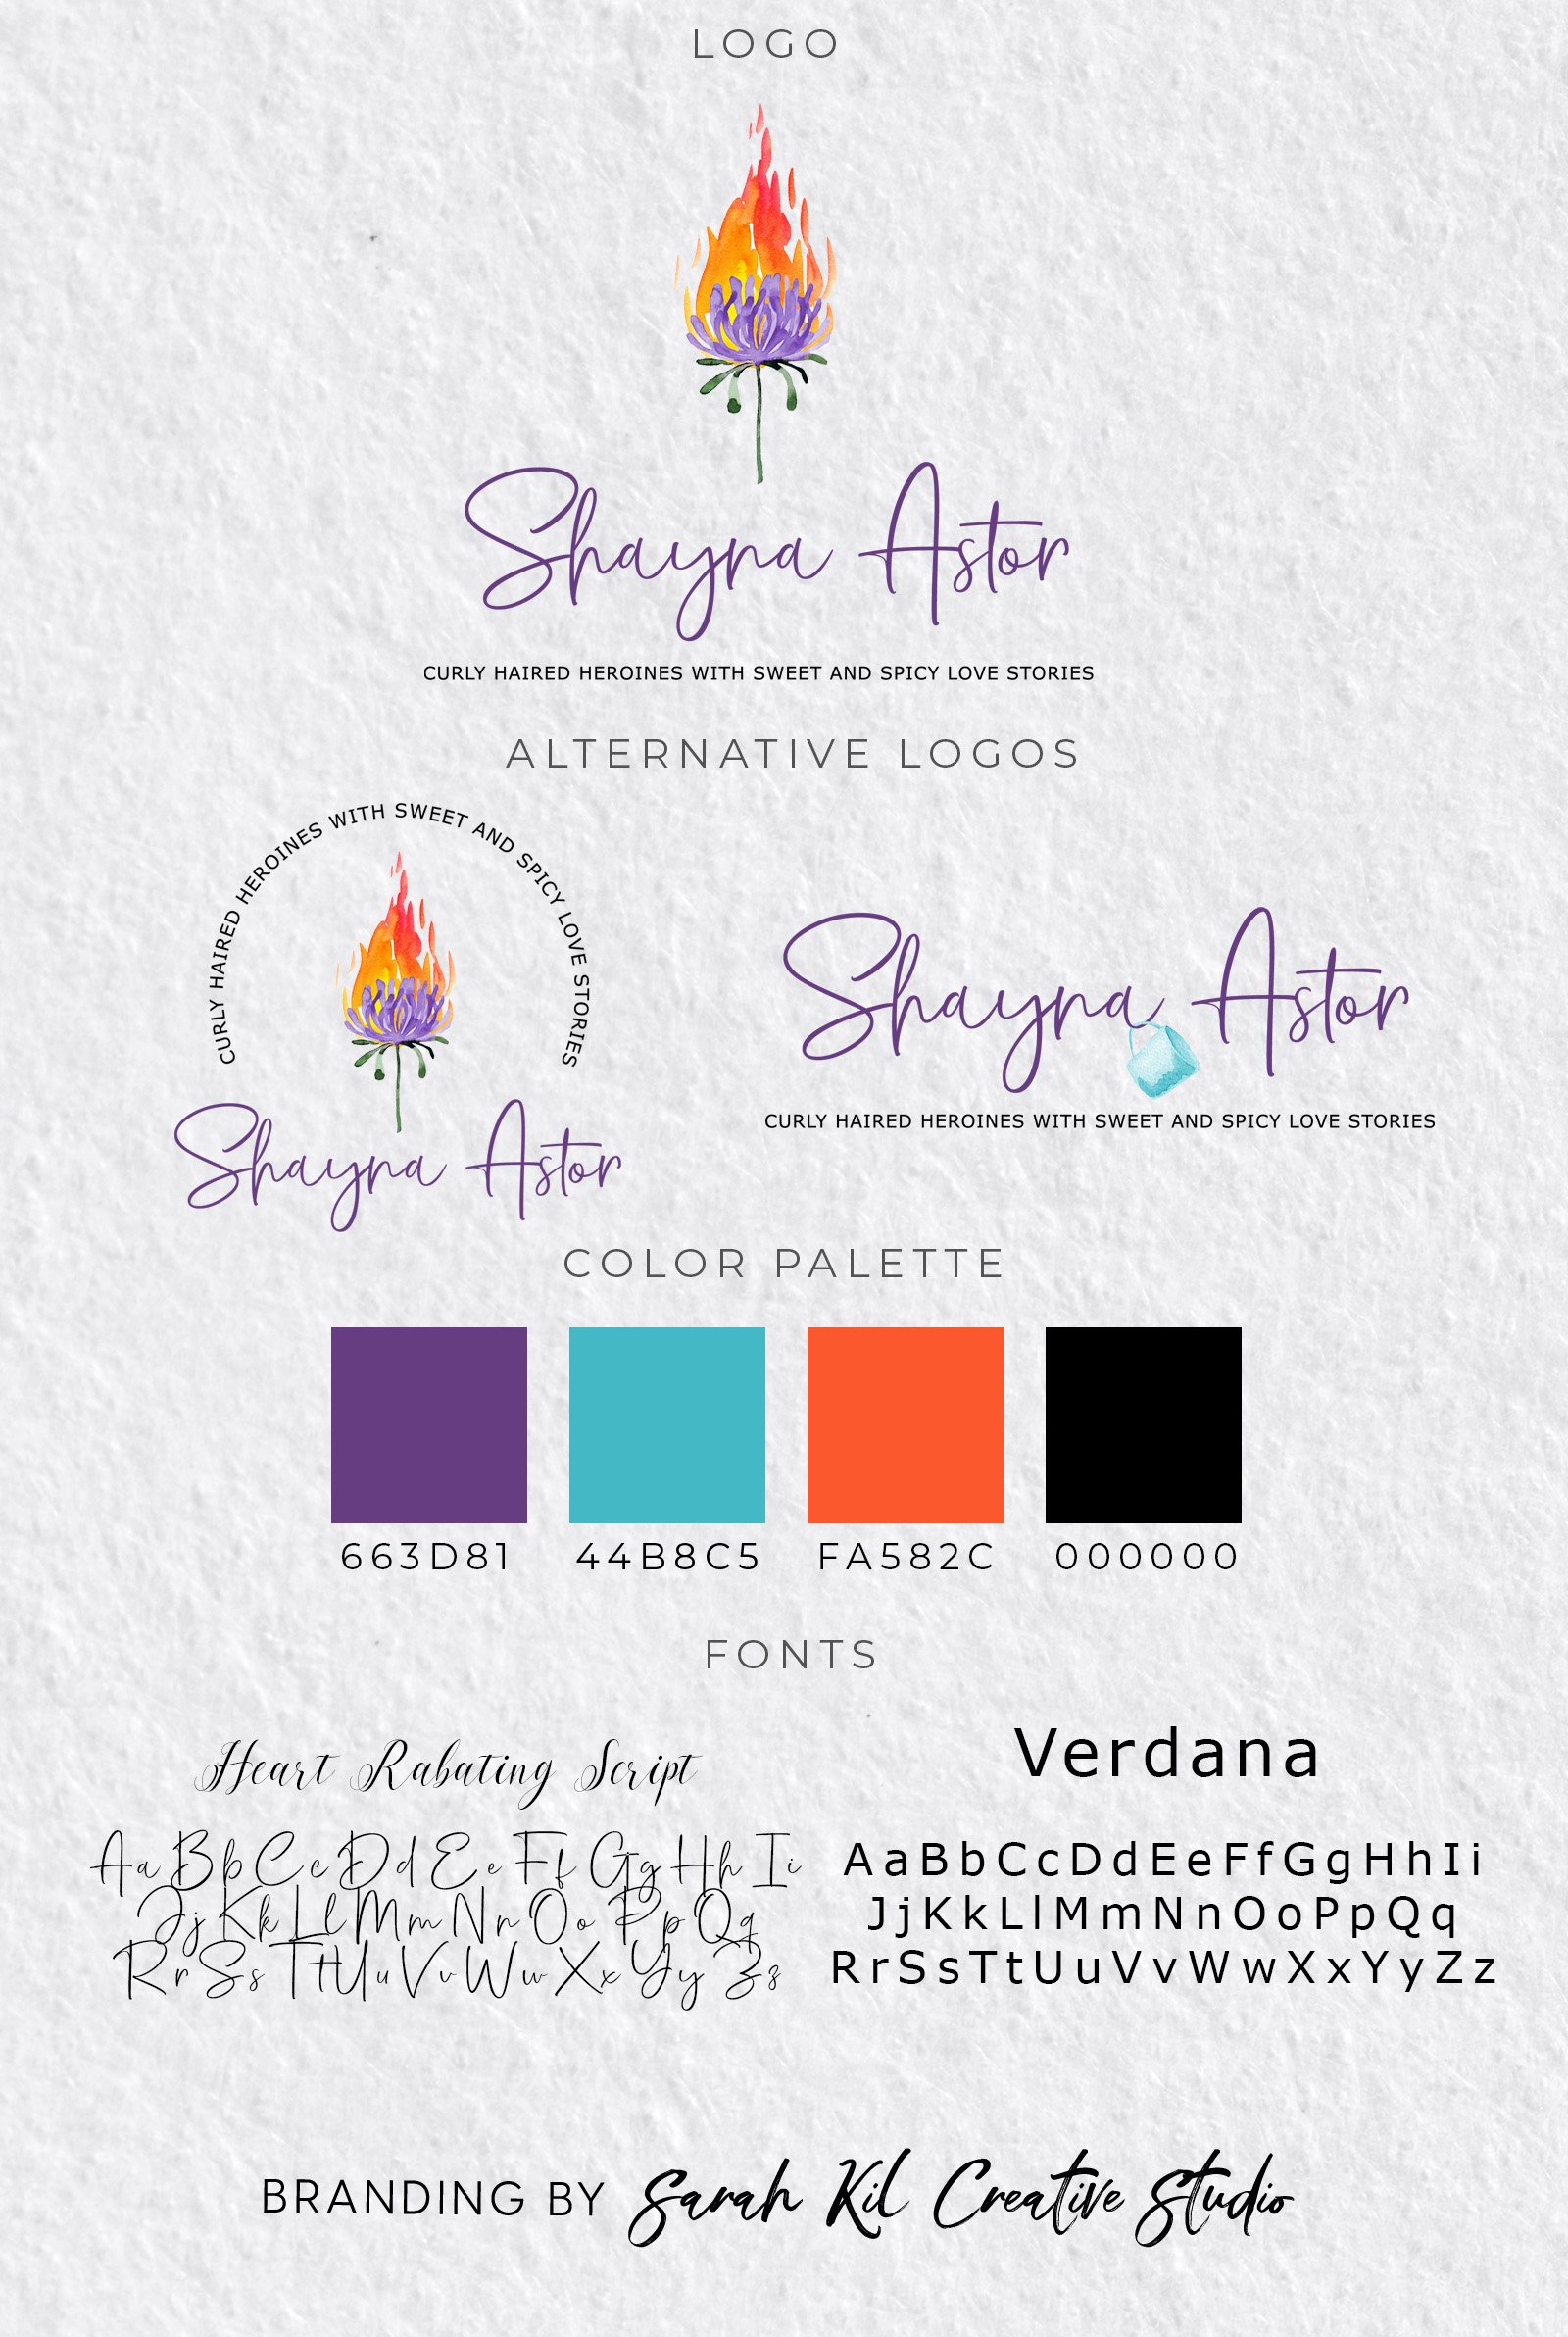 Shayna Astor Branding Kit.jpg